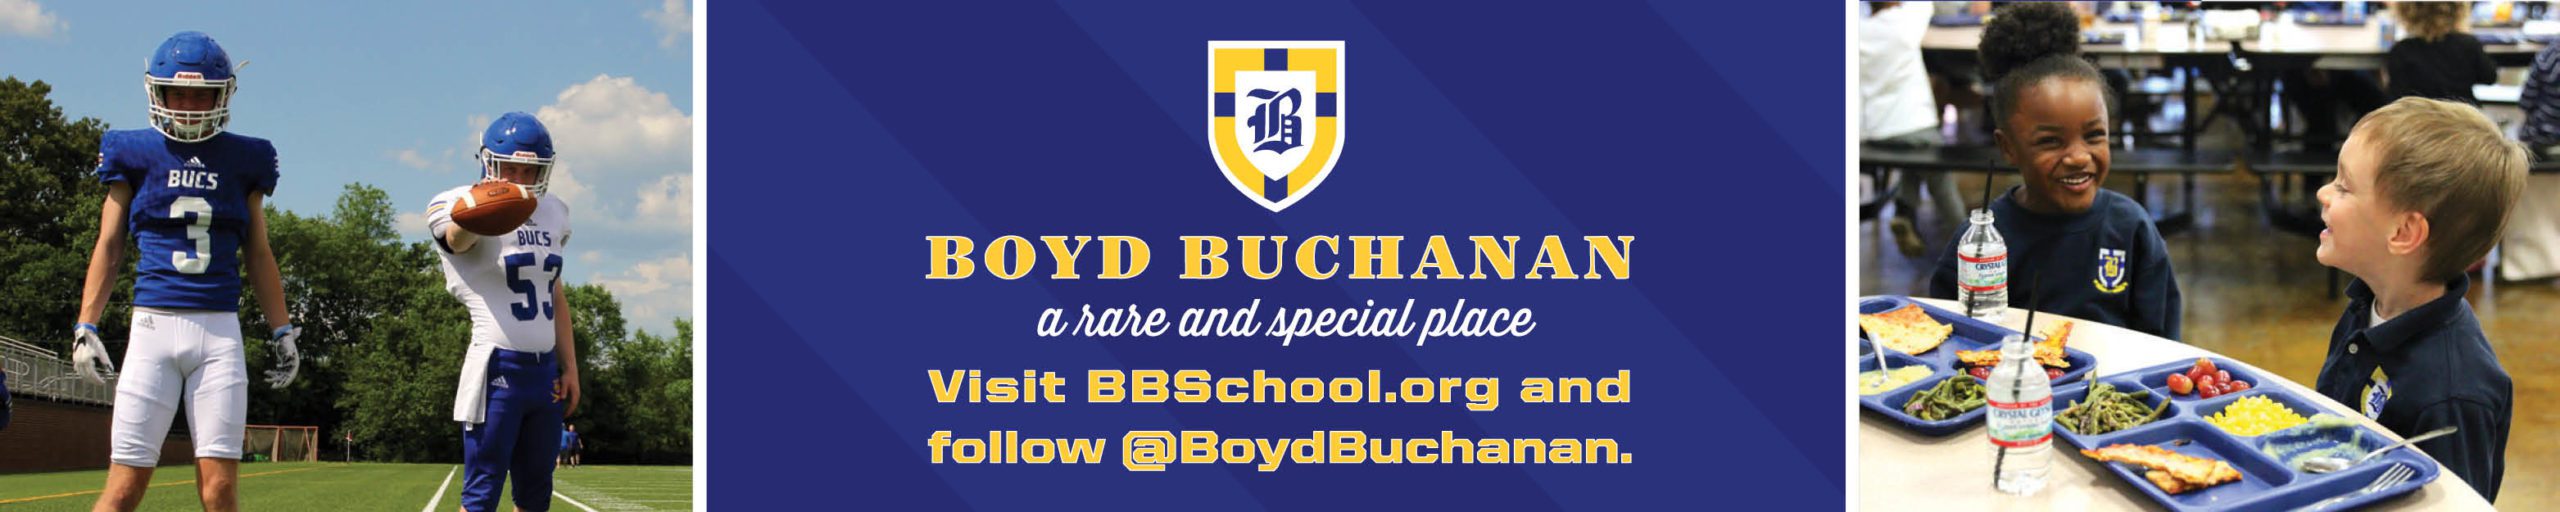 Boyd Buchanan ad